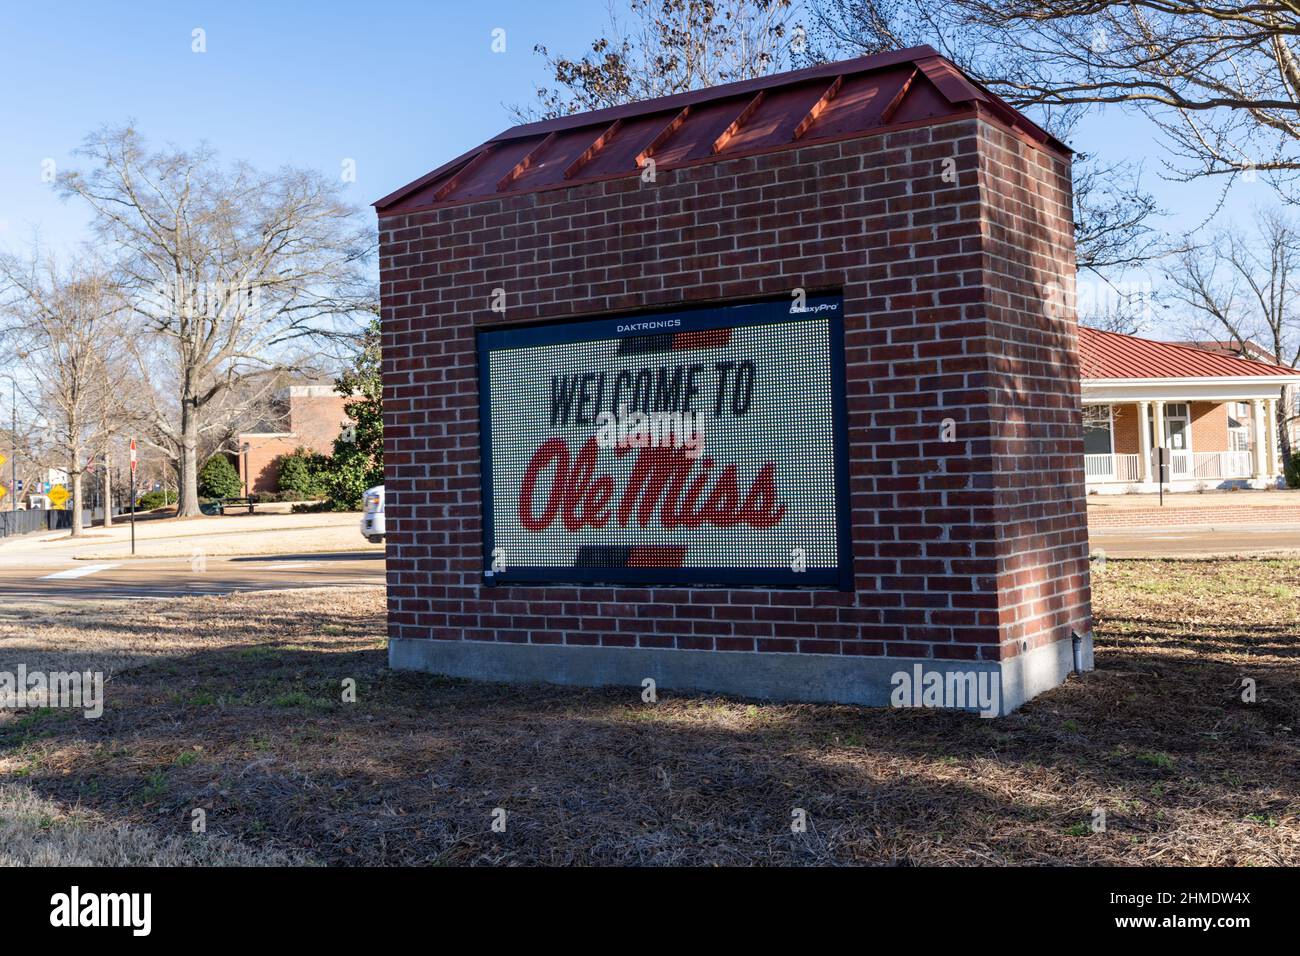 Oxford, Mississippi - 13 janvier 2021 : panneau de bienvenue électronique pour Ole Miss, également connu sous le nom d'Université du Mississippi Banque D'Images